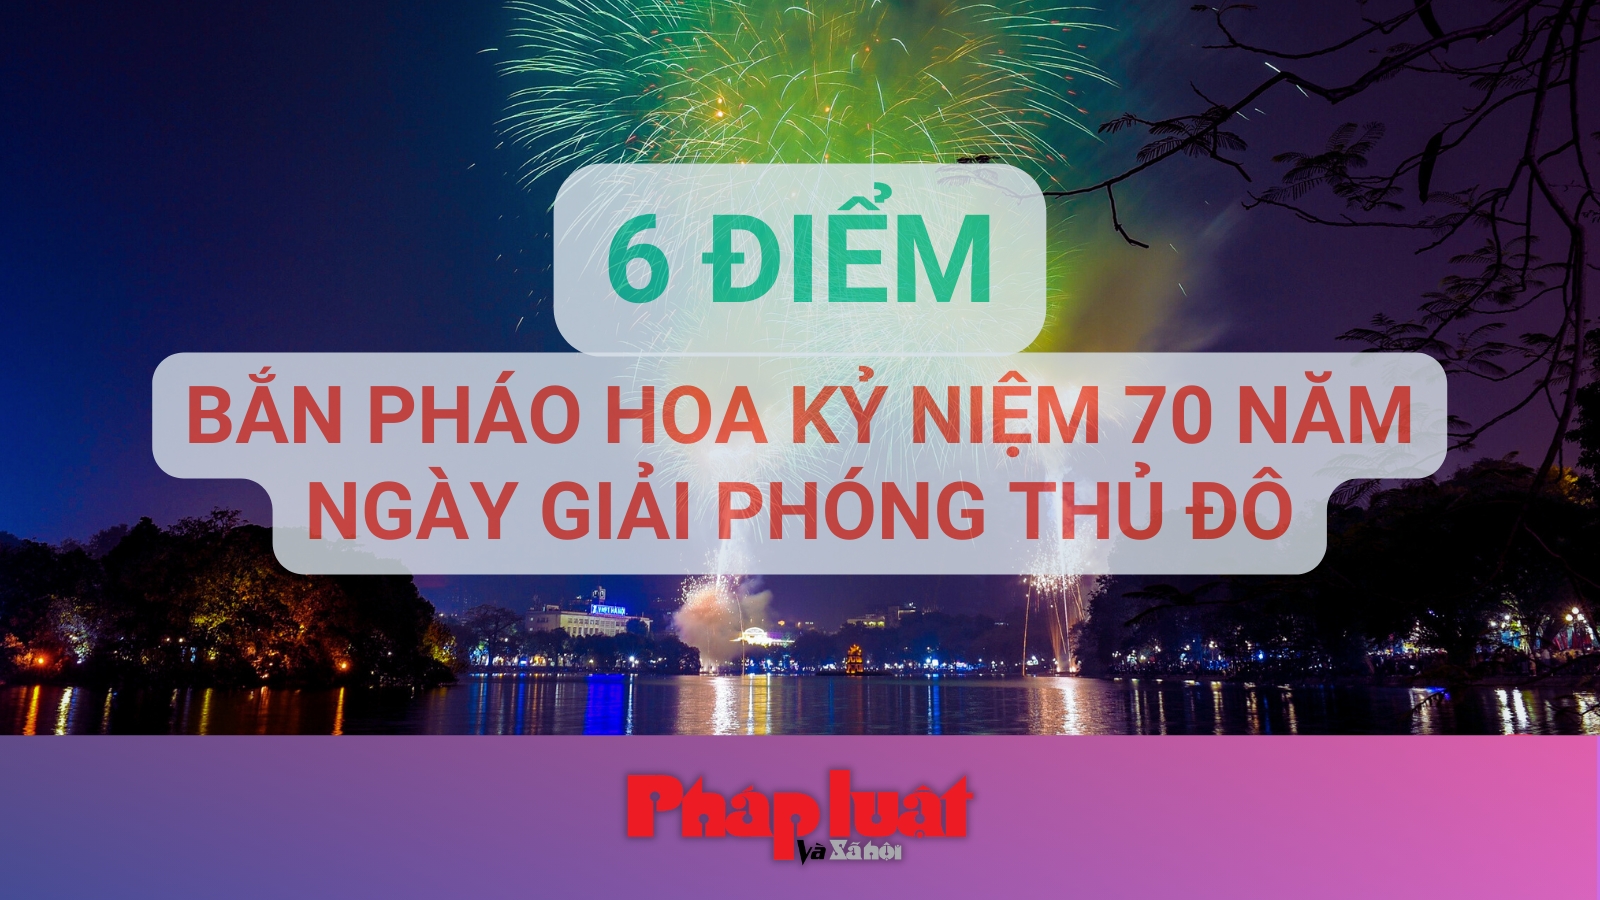 6 địa điểm bắn pháo hoa kỷ niệm 70 năm Ngày Giải phóng Thủ đô tại Hà Nội